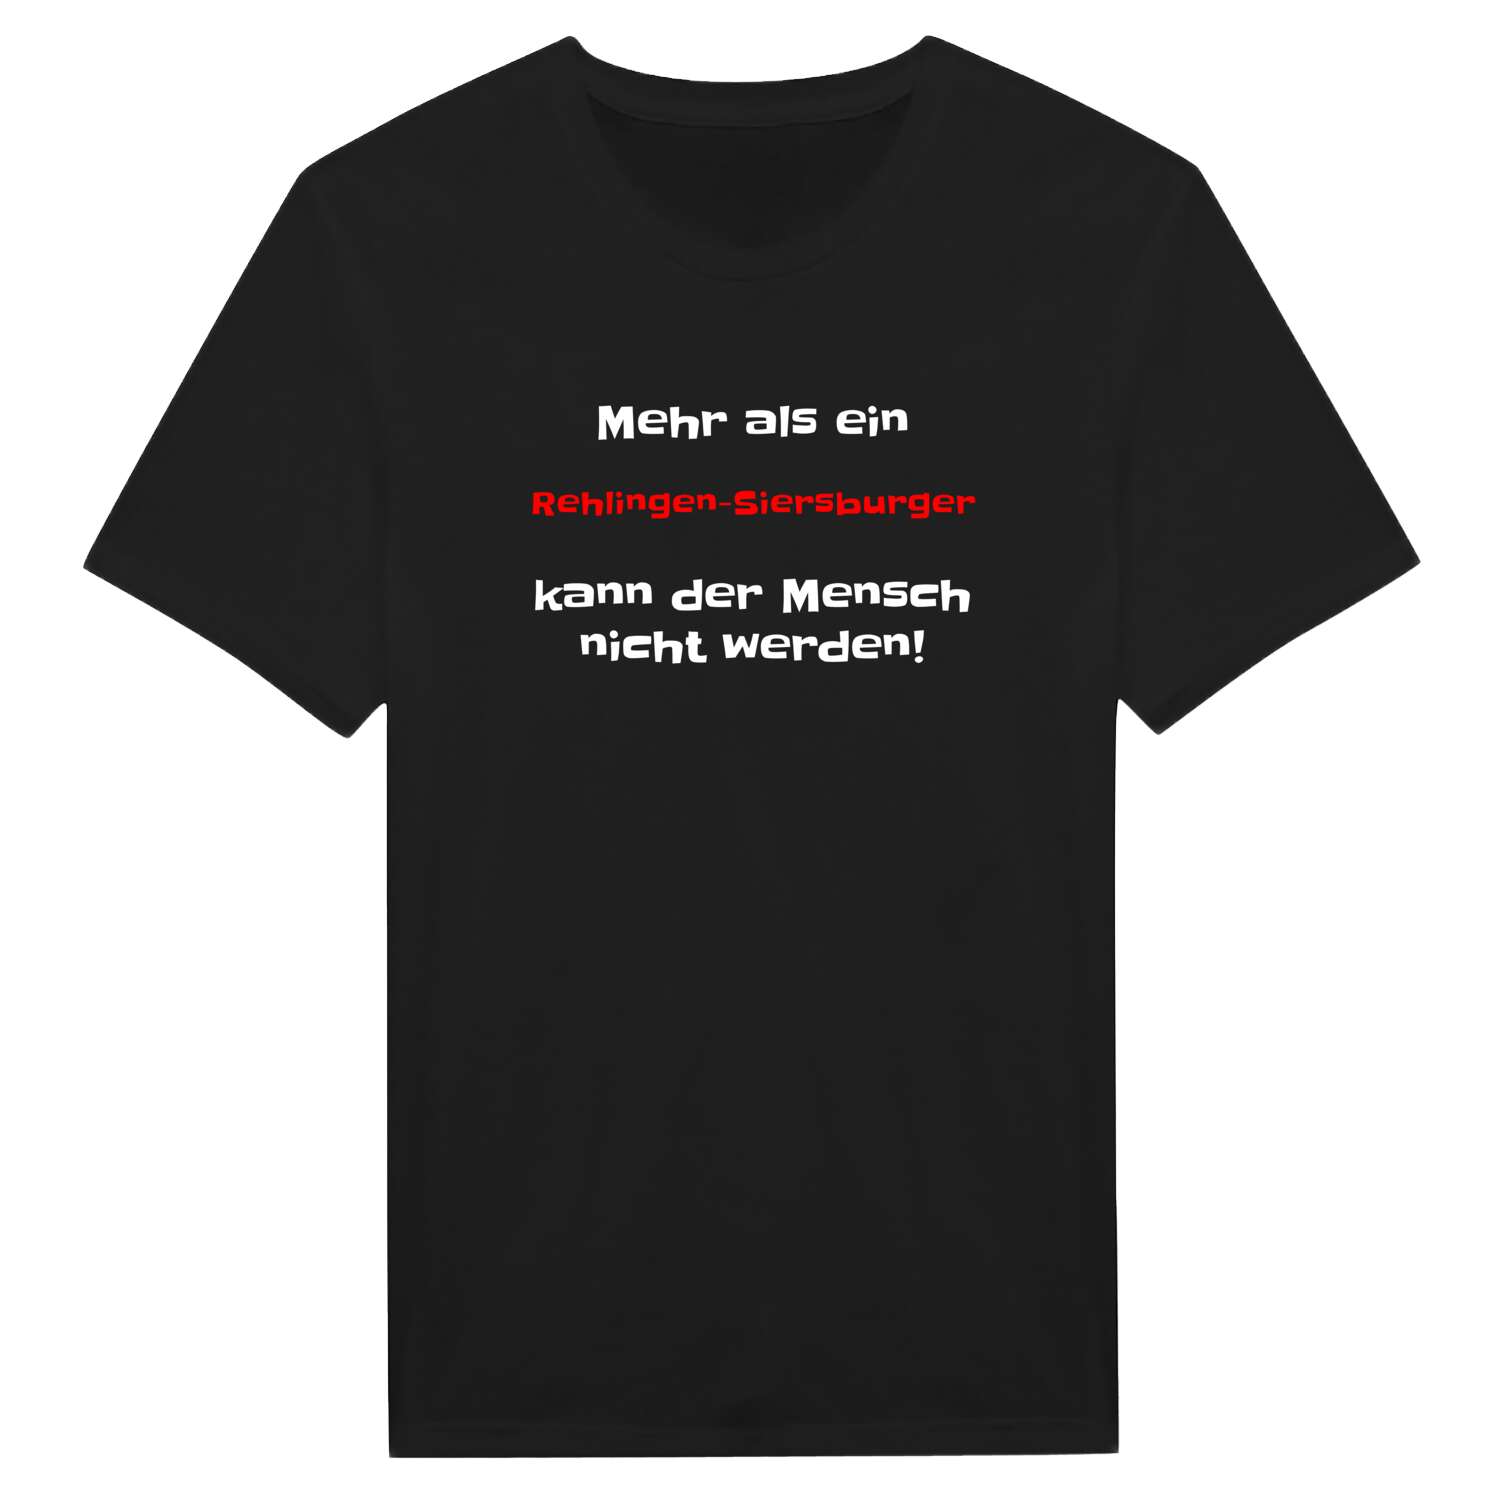 Rehlingen-Siersburg T-Shirt »Mehr als ein«